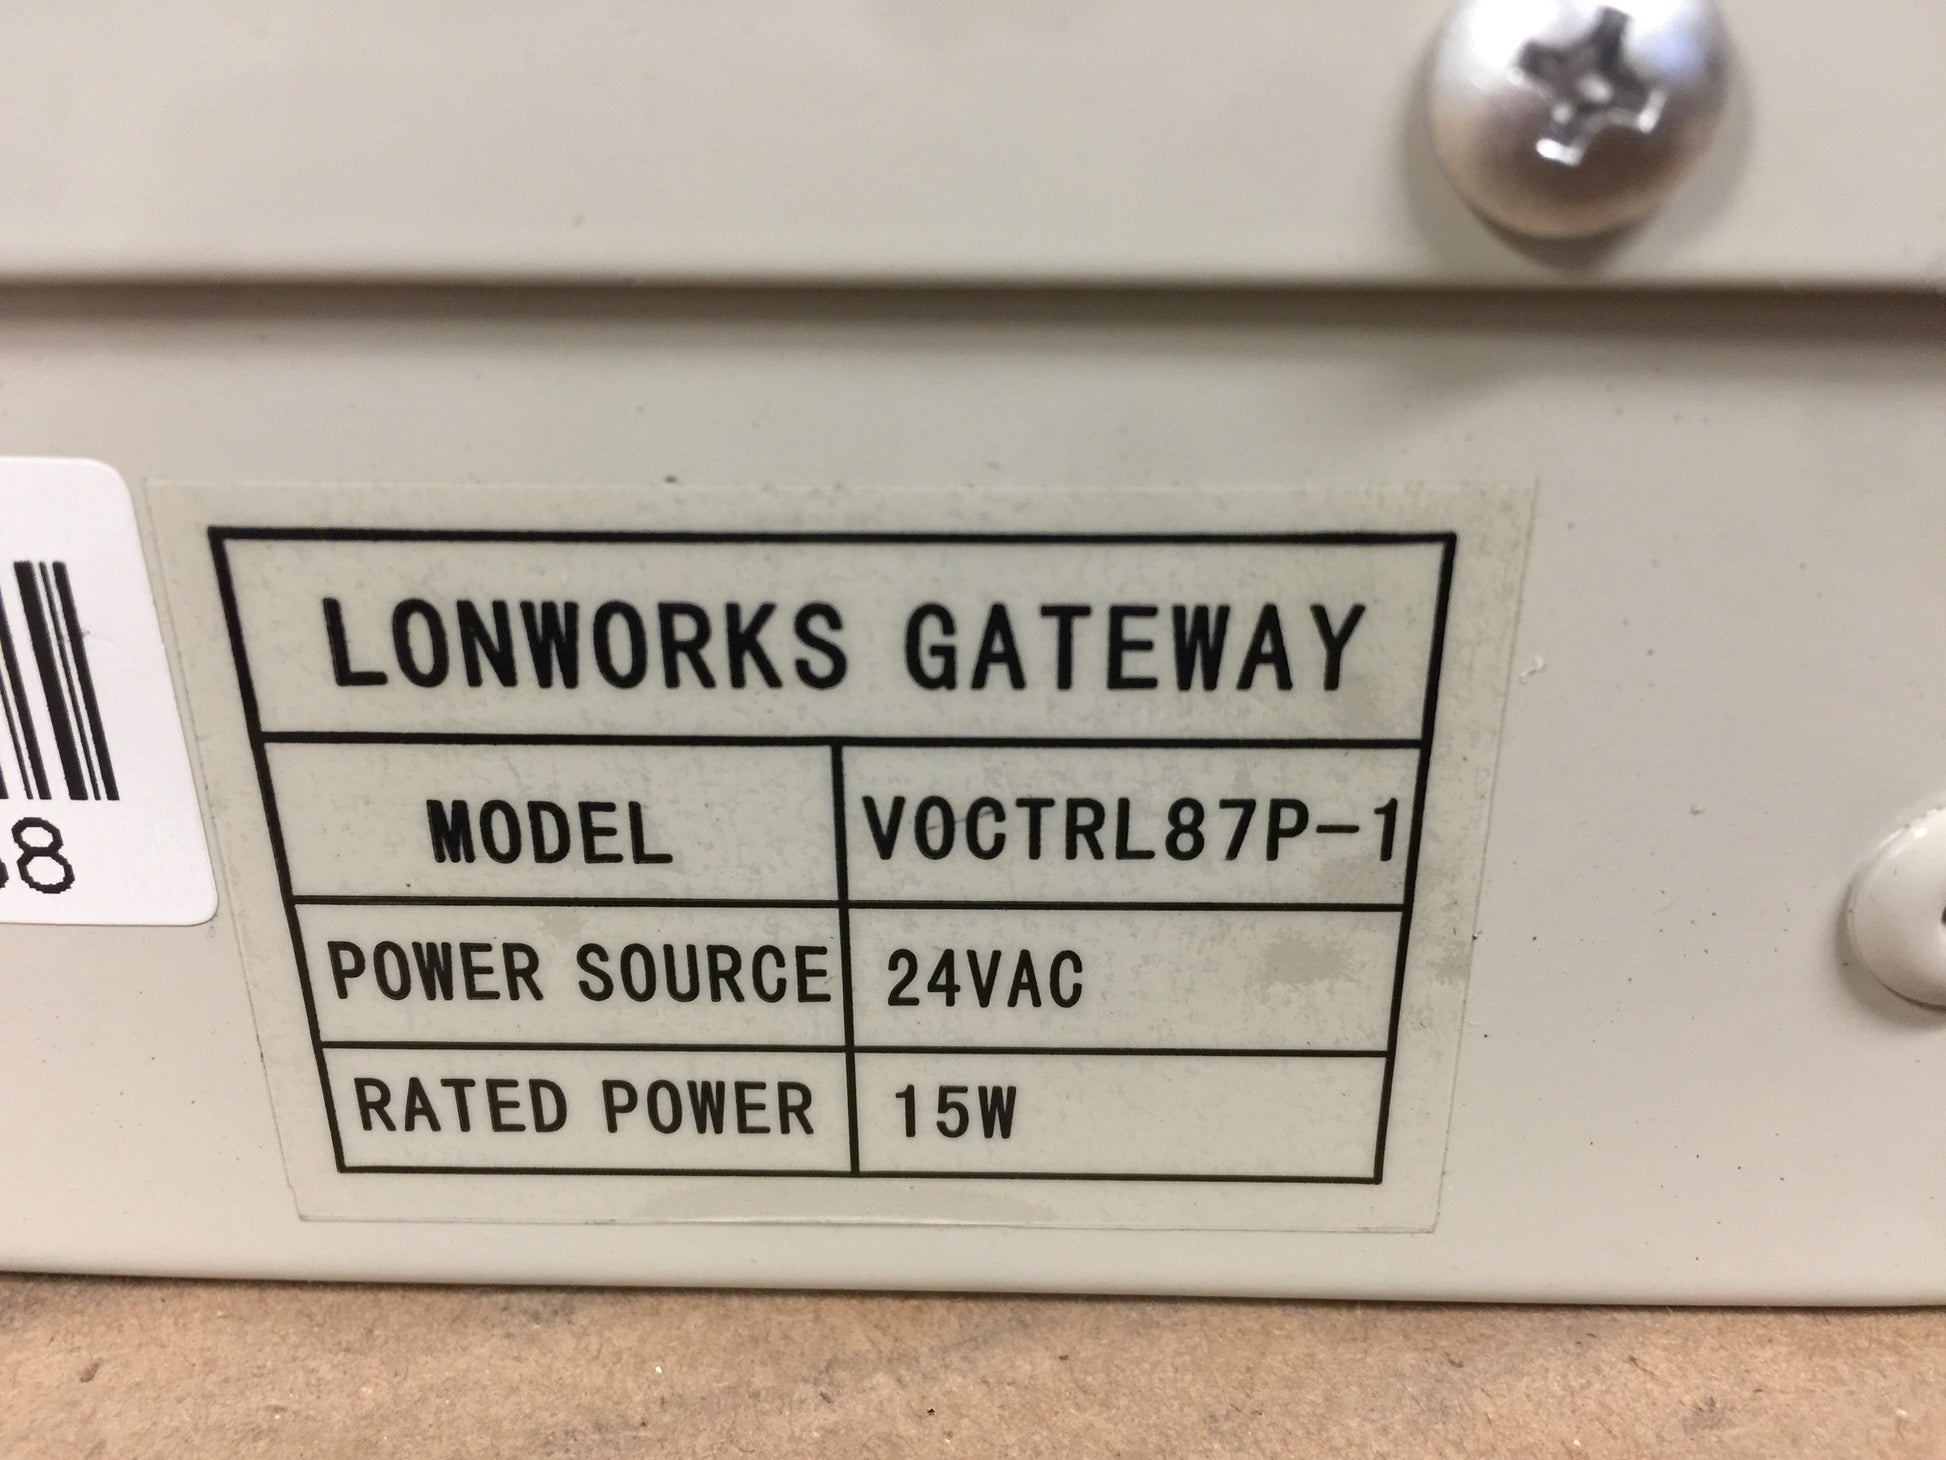 LONWORKS GATEWAY MINI-VRF CONTROLLER; 24VAC, 15W